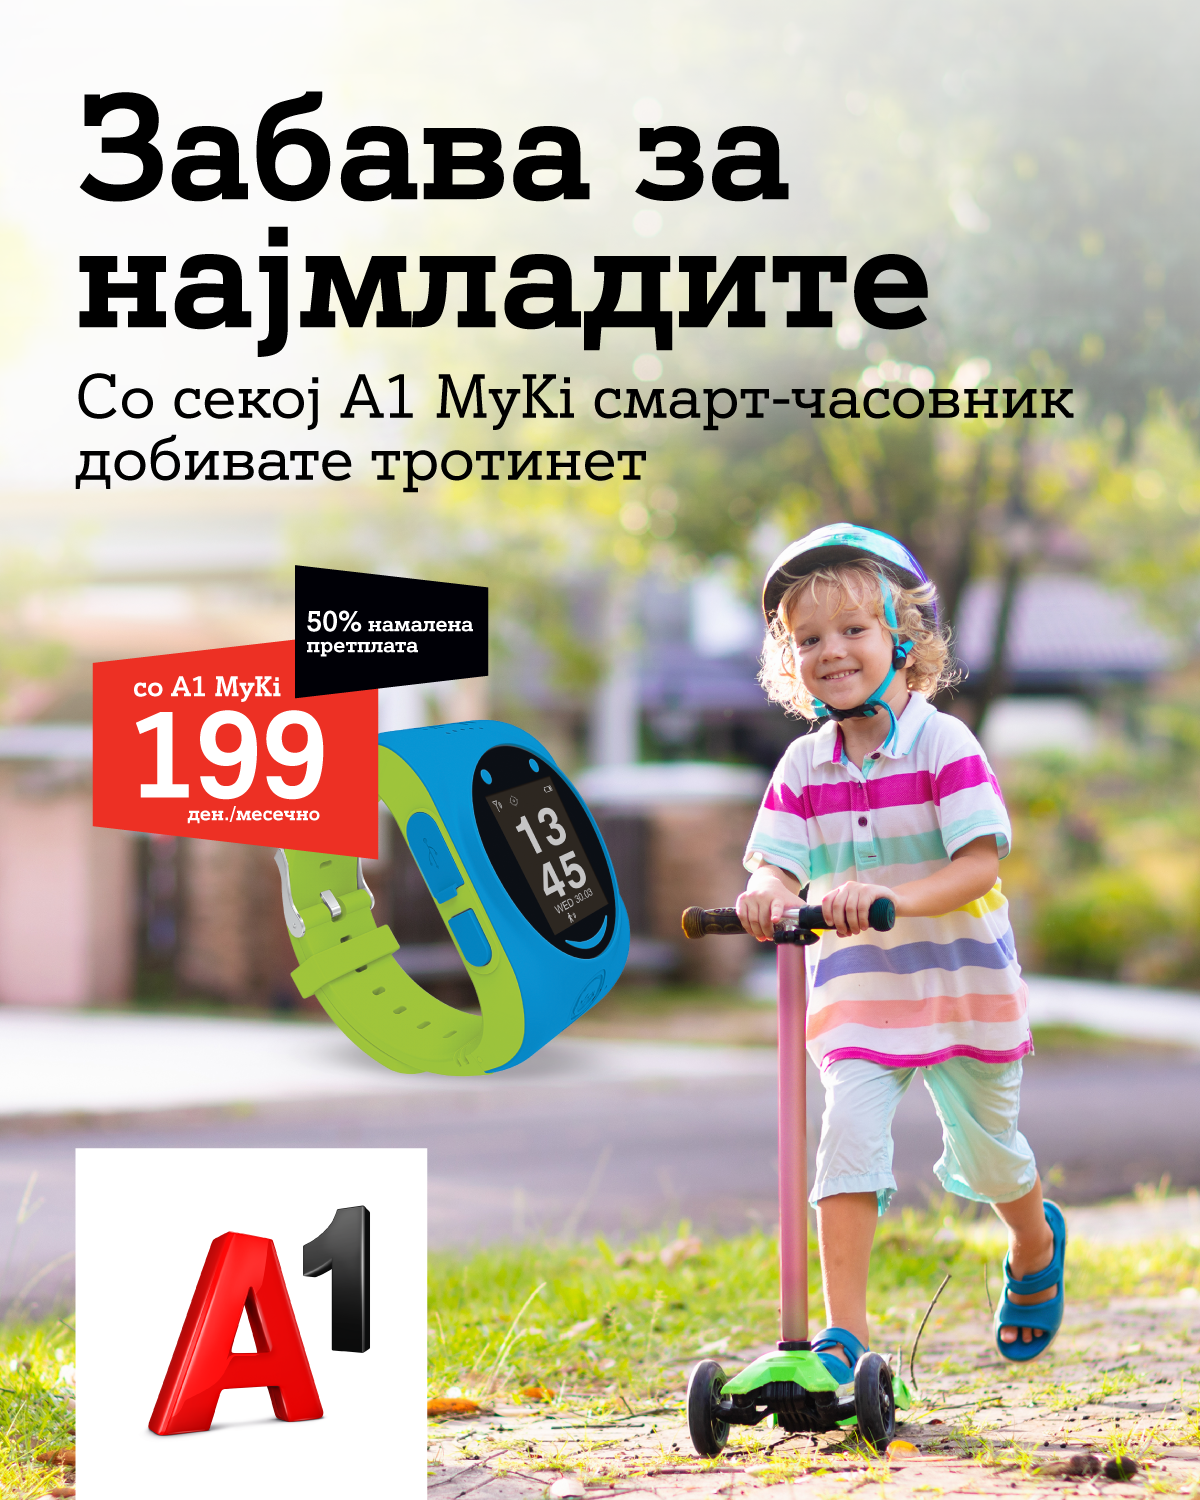 А1 MyKi, детскиот смарт часовник, со намалена месечна претплата и детски тротинет